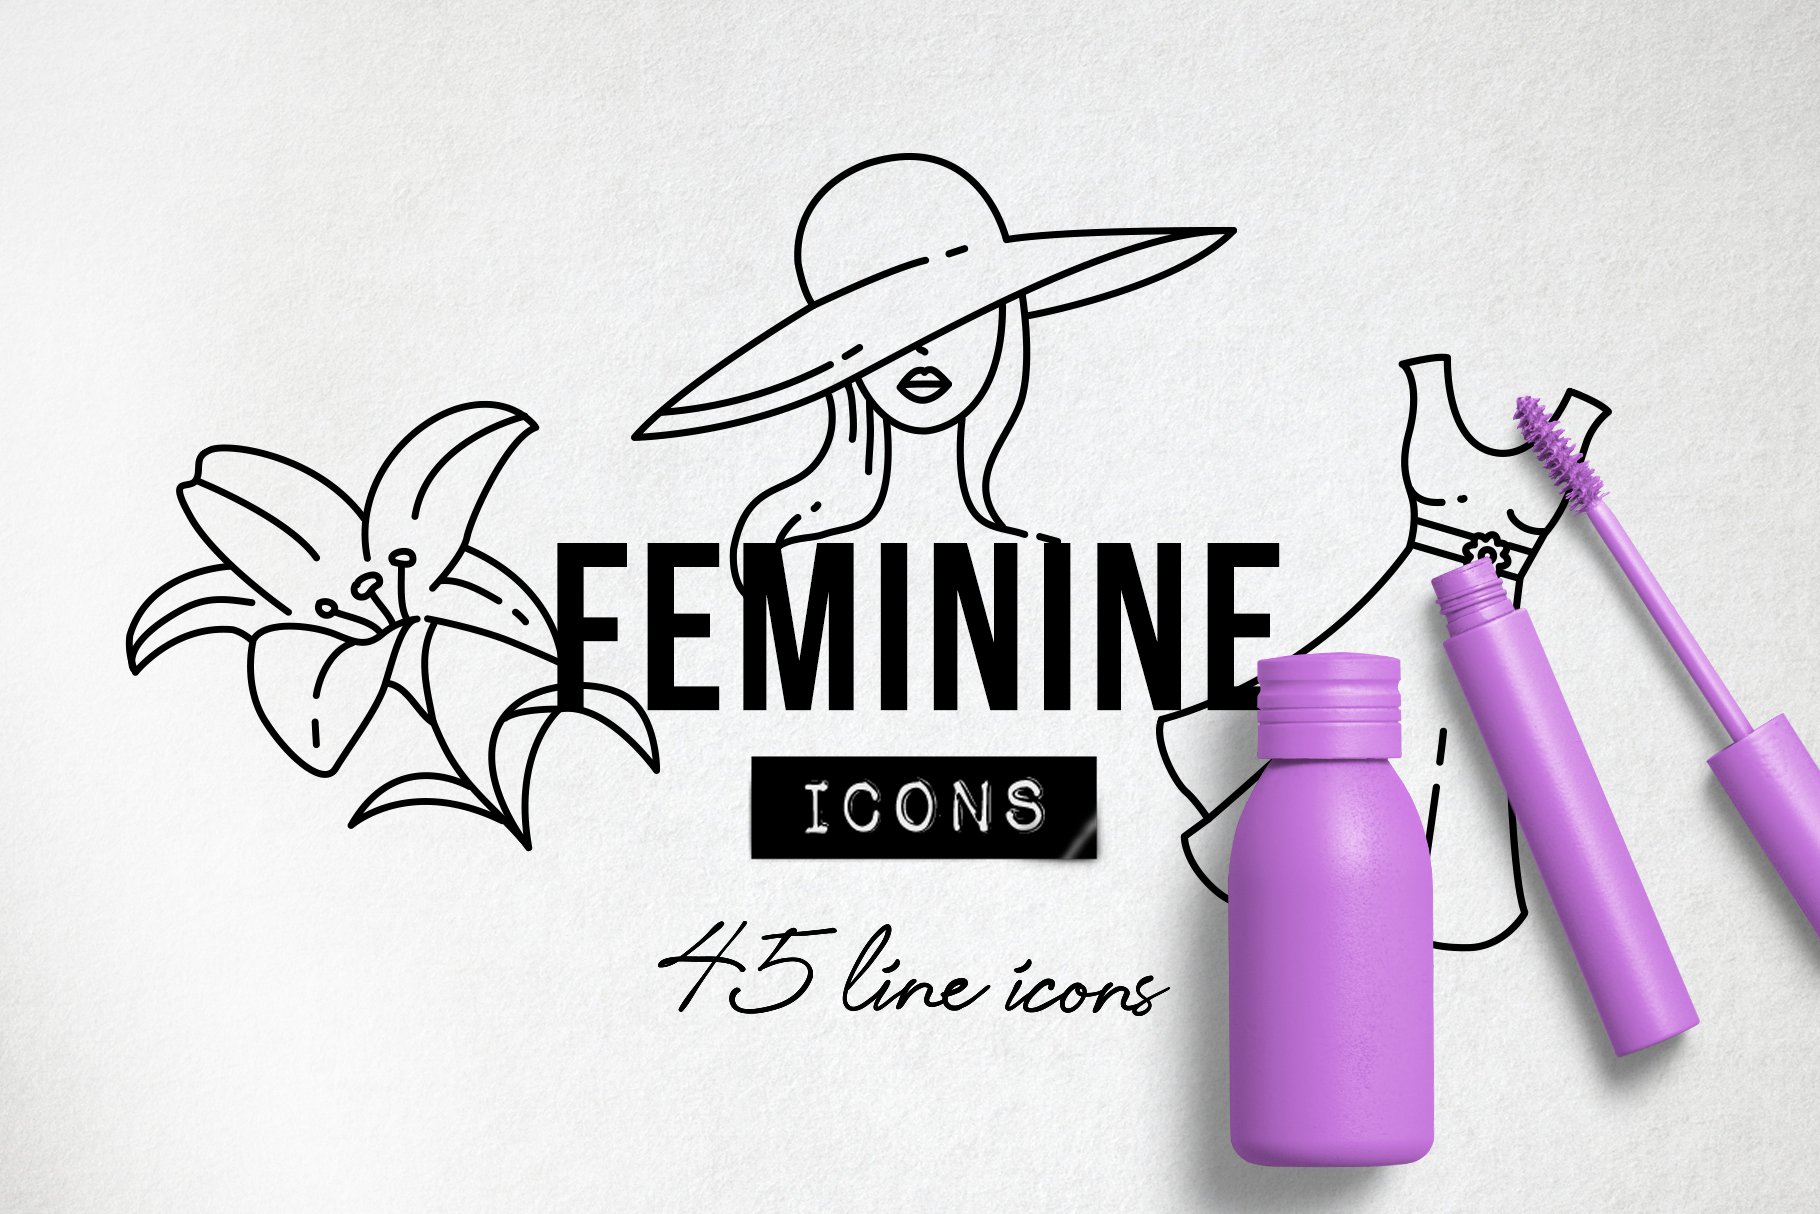 09 feminine beauty icons 582